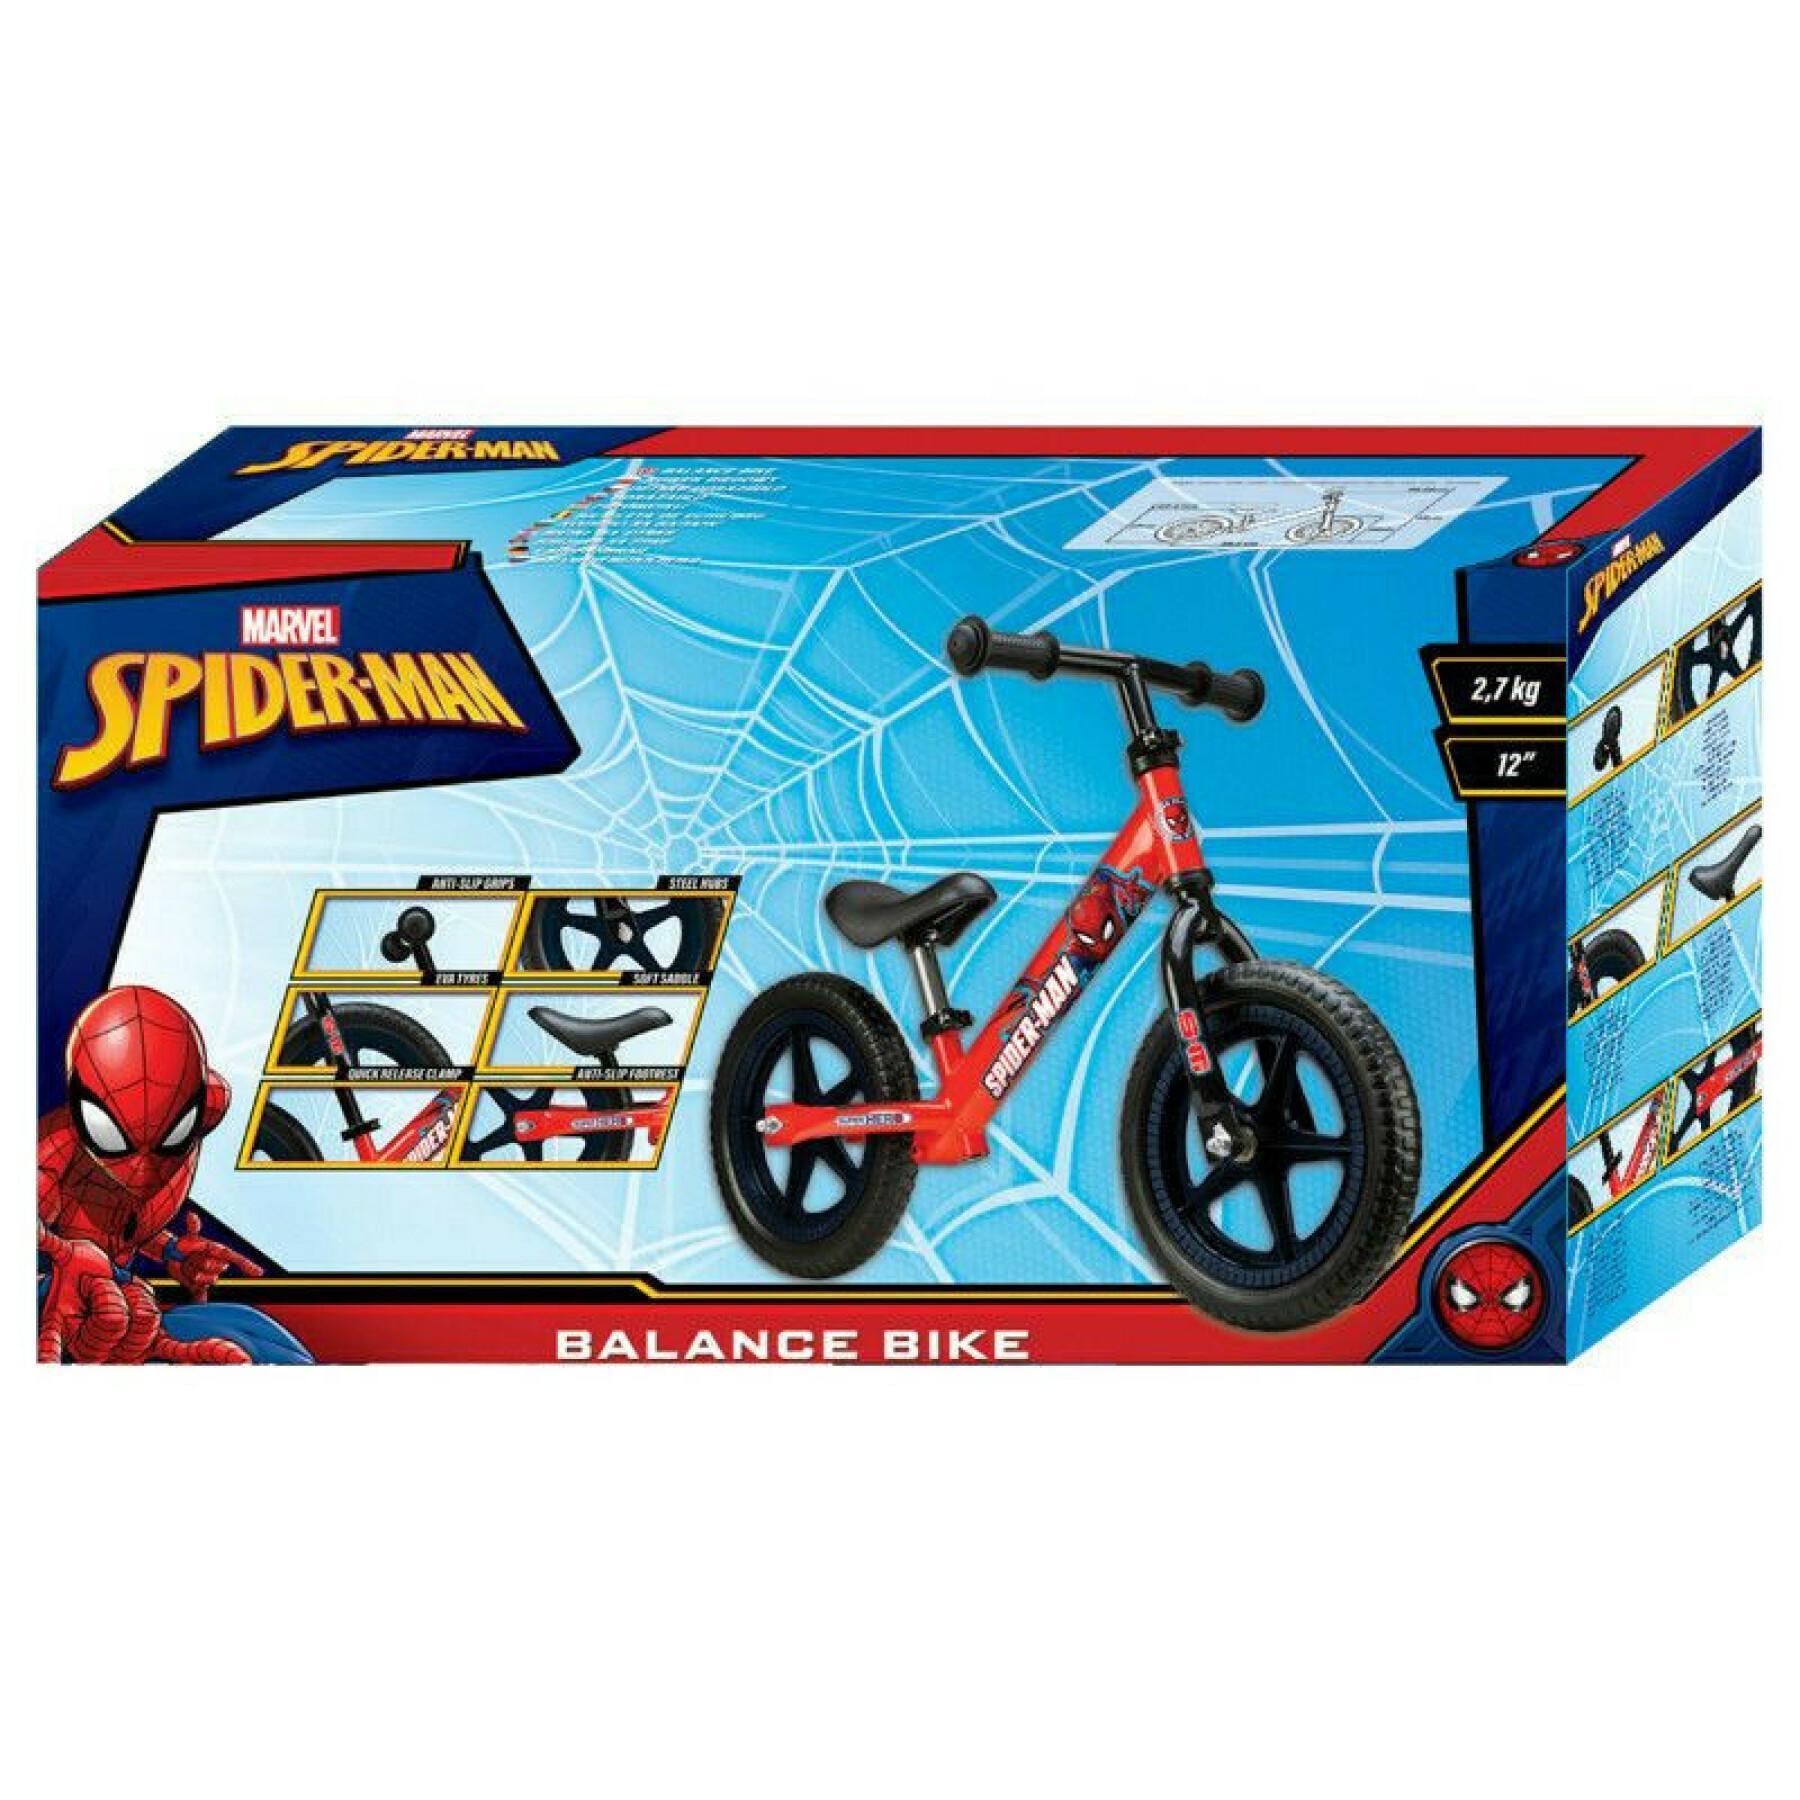 Metalen scooter voor kinderen Disney spiderman